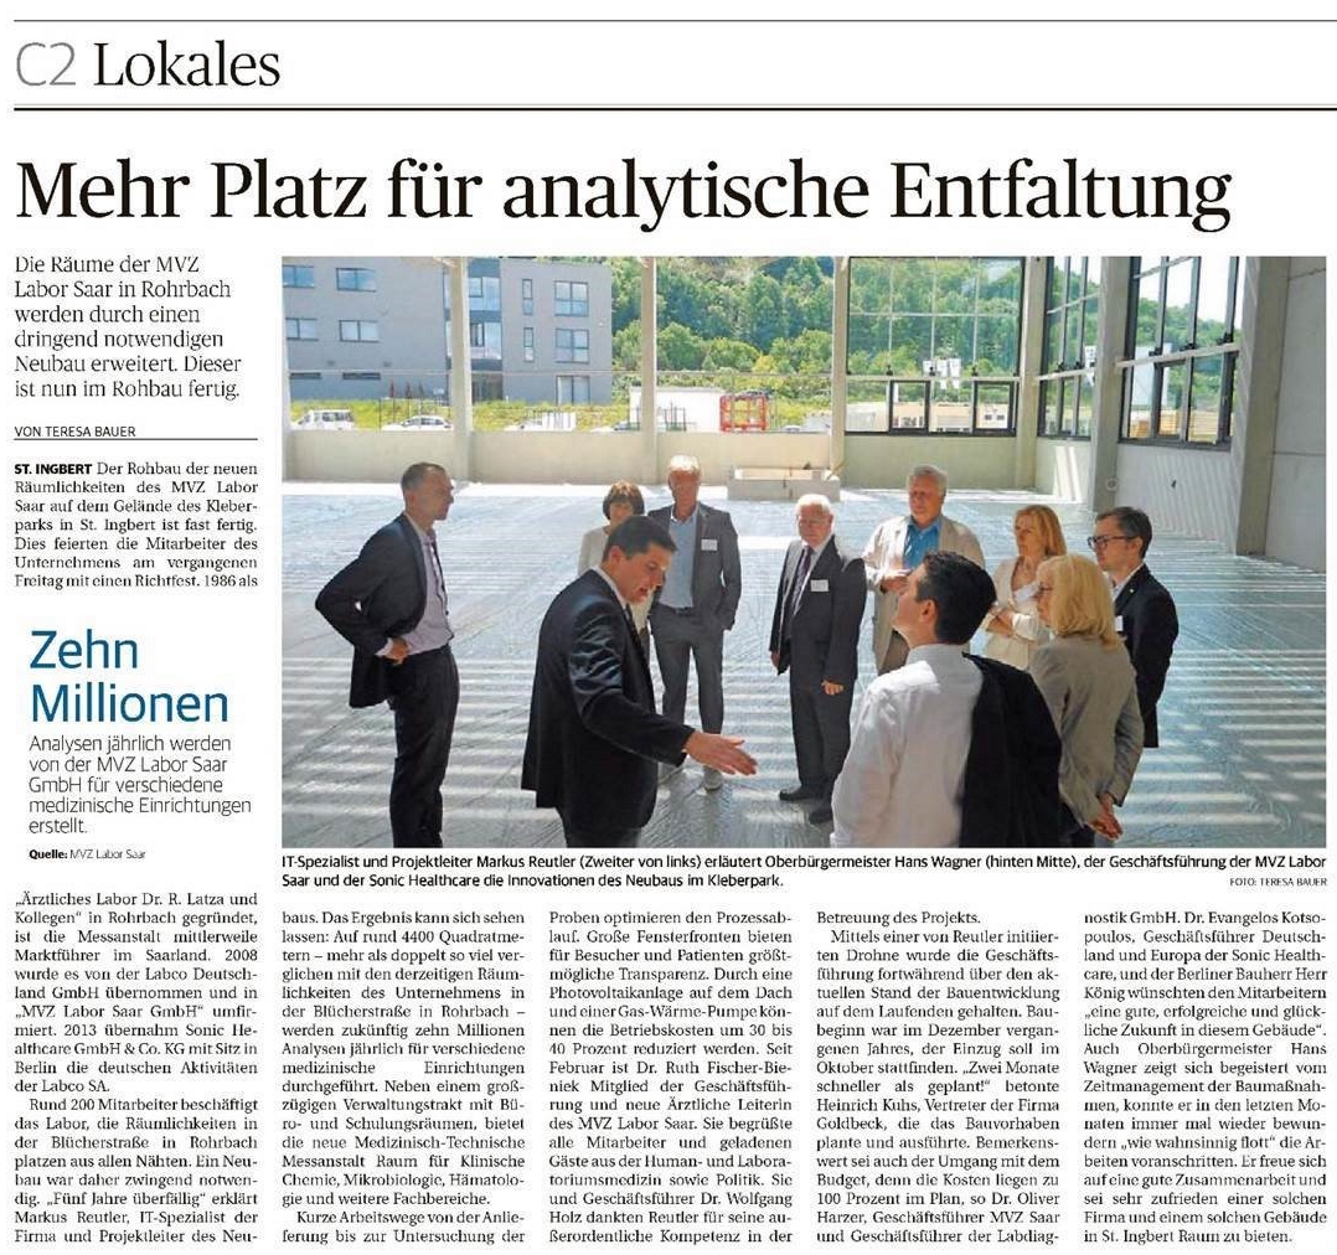 Die Saarbrücker Zeitung besucht das Richtfest und erläutert die Vorteile der zukünftigen Räumlichkeiten des MVZ Labor Saar.